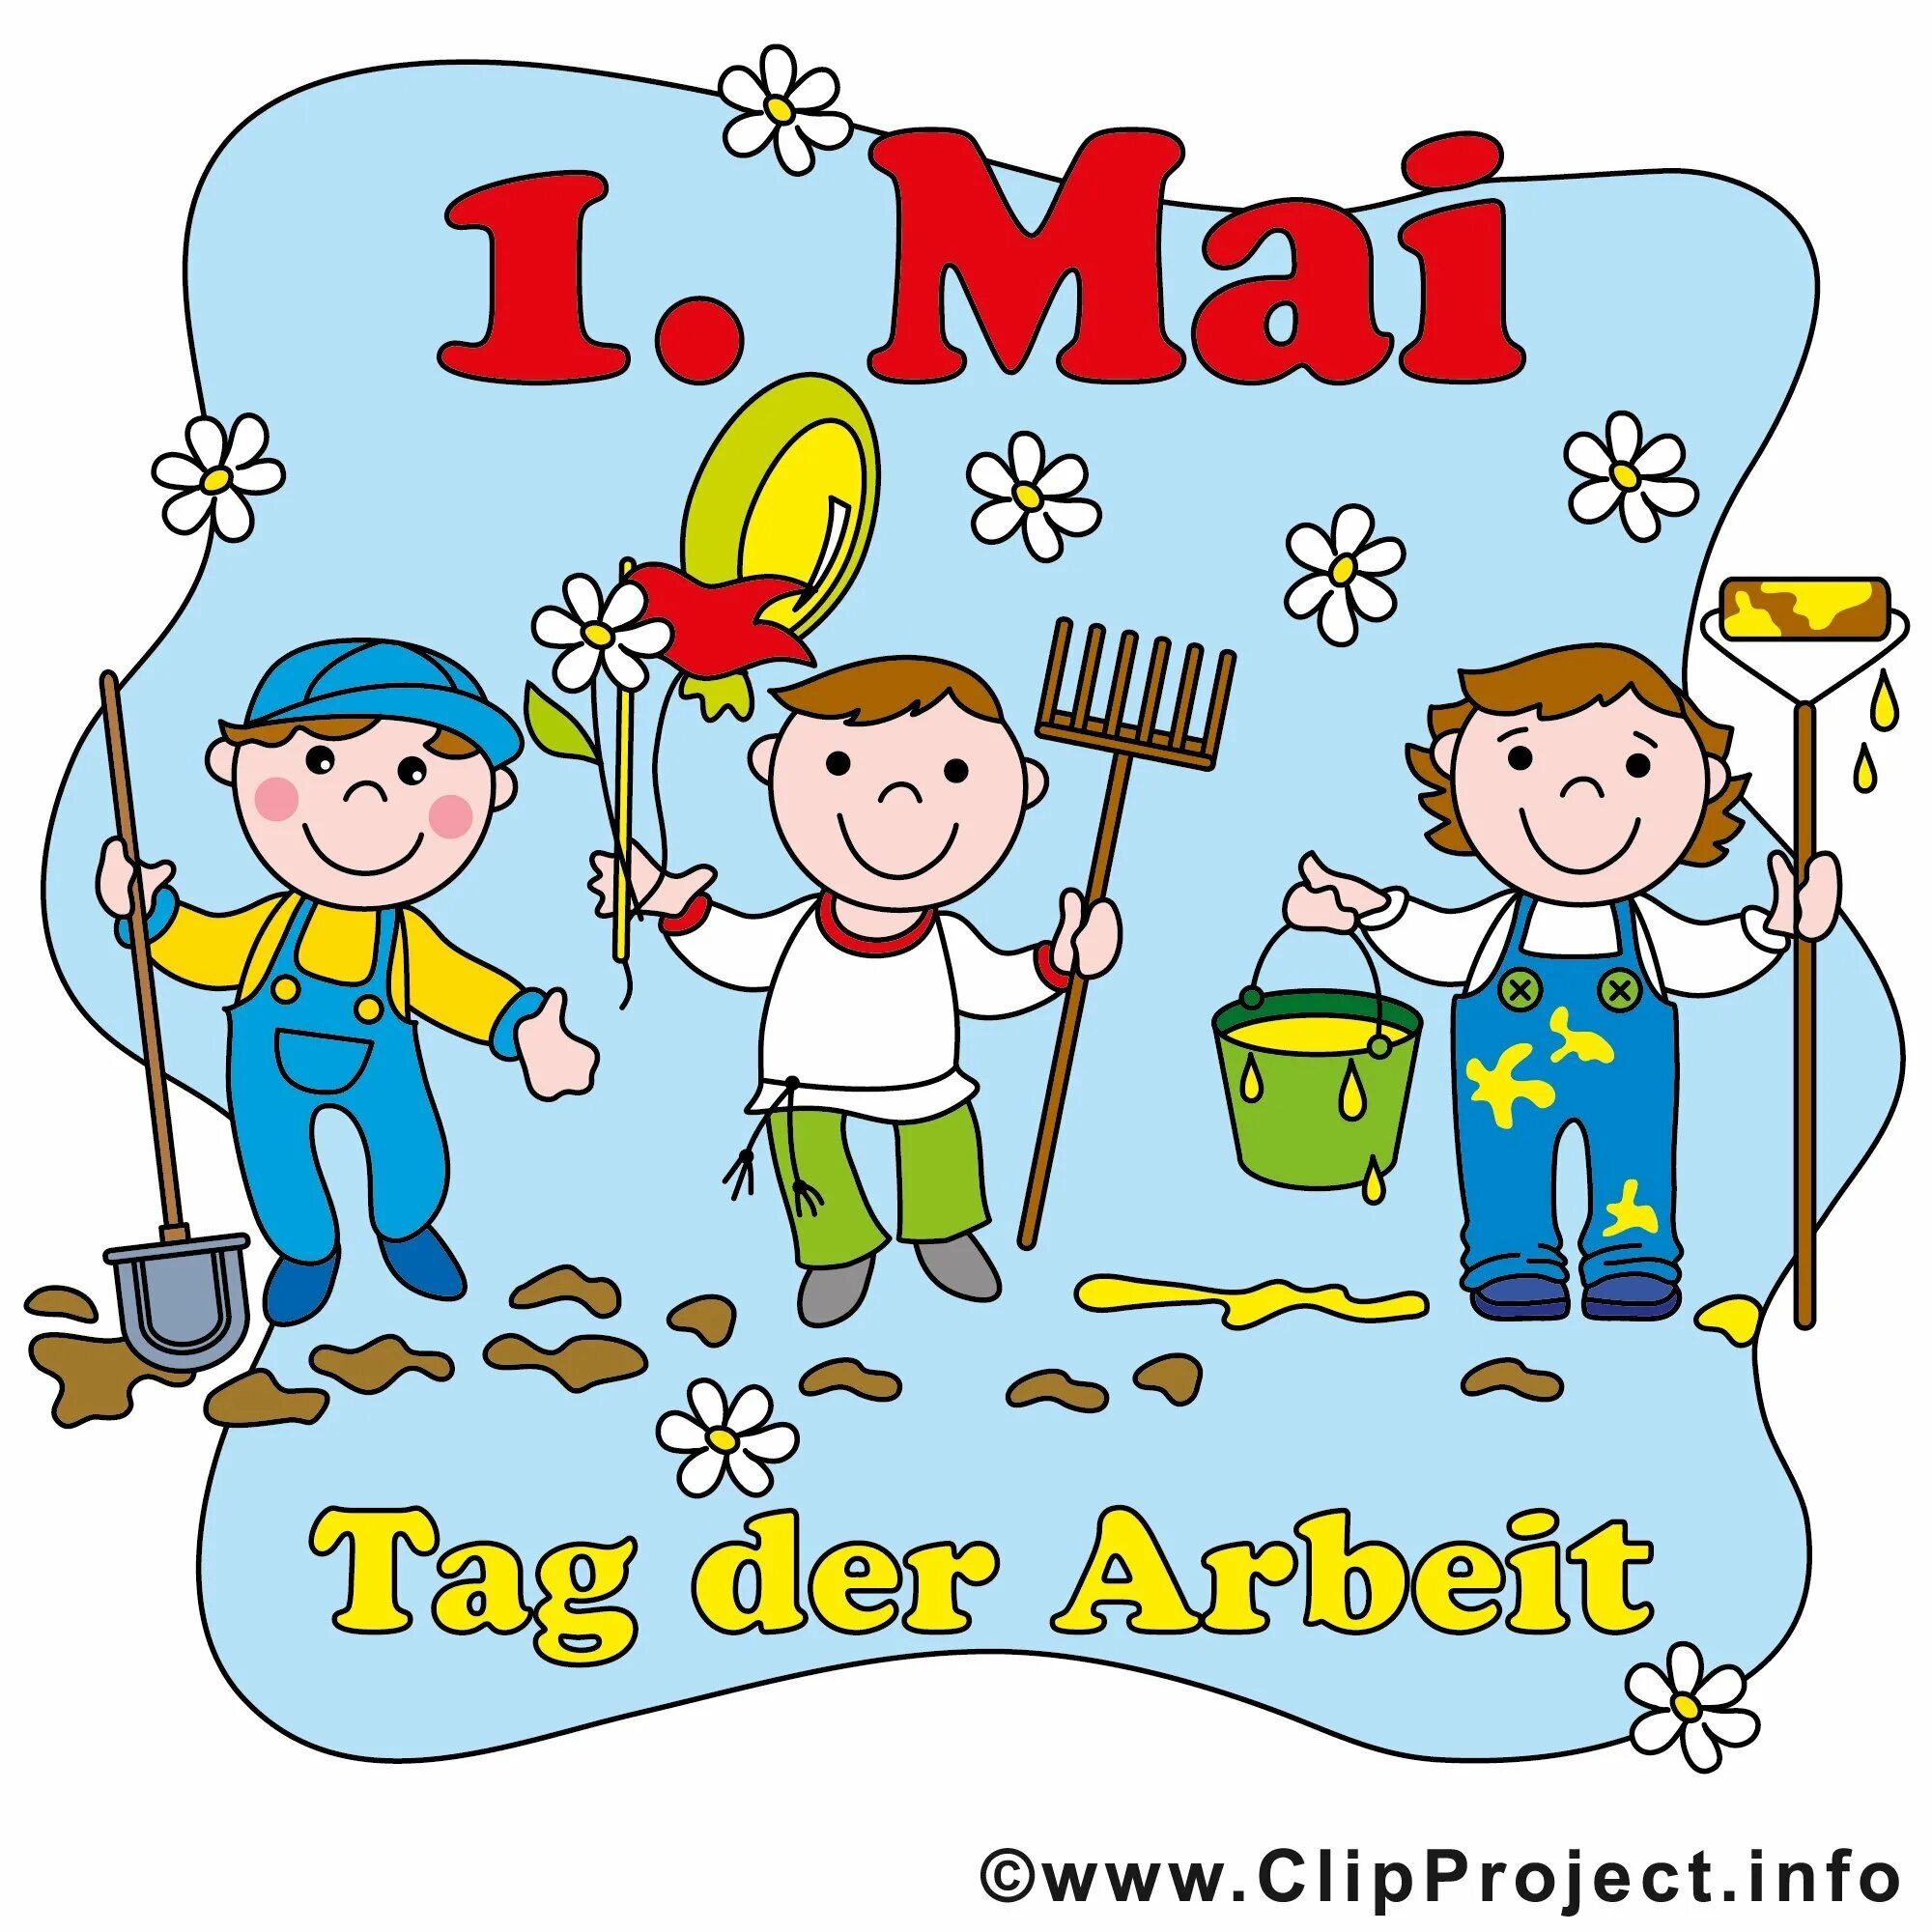 Картинка день первых. День труда рисунок. Tag der Arbeit (день труда). Tag der Arbeit в Германии. День труда картинки для детей.